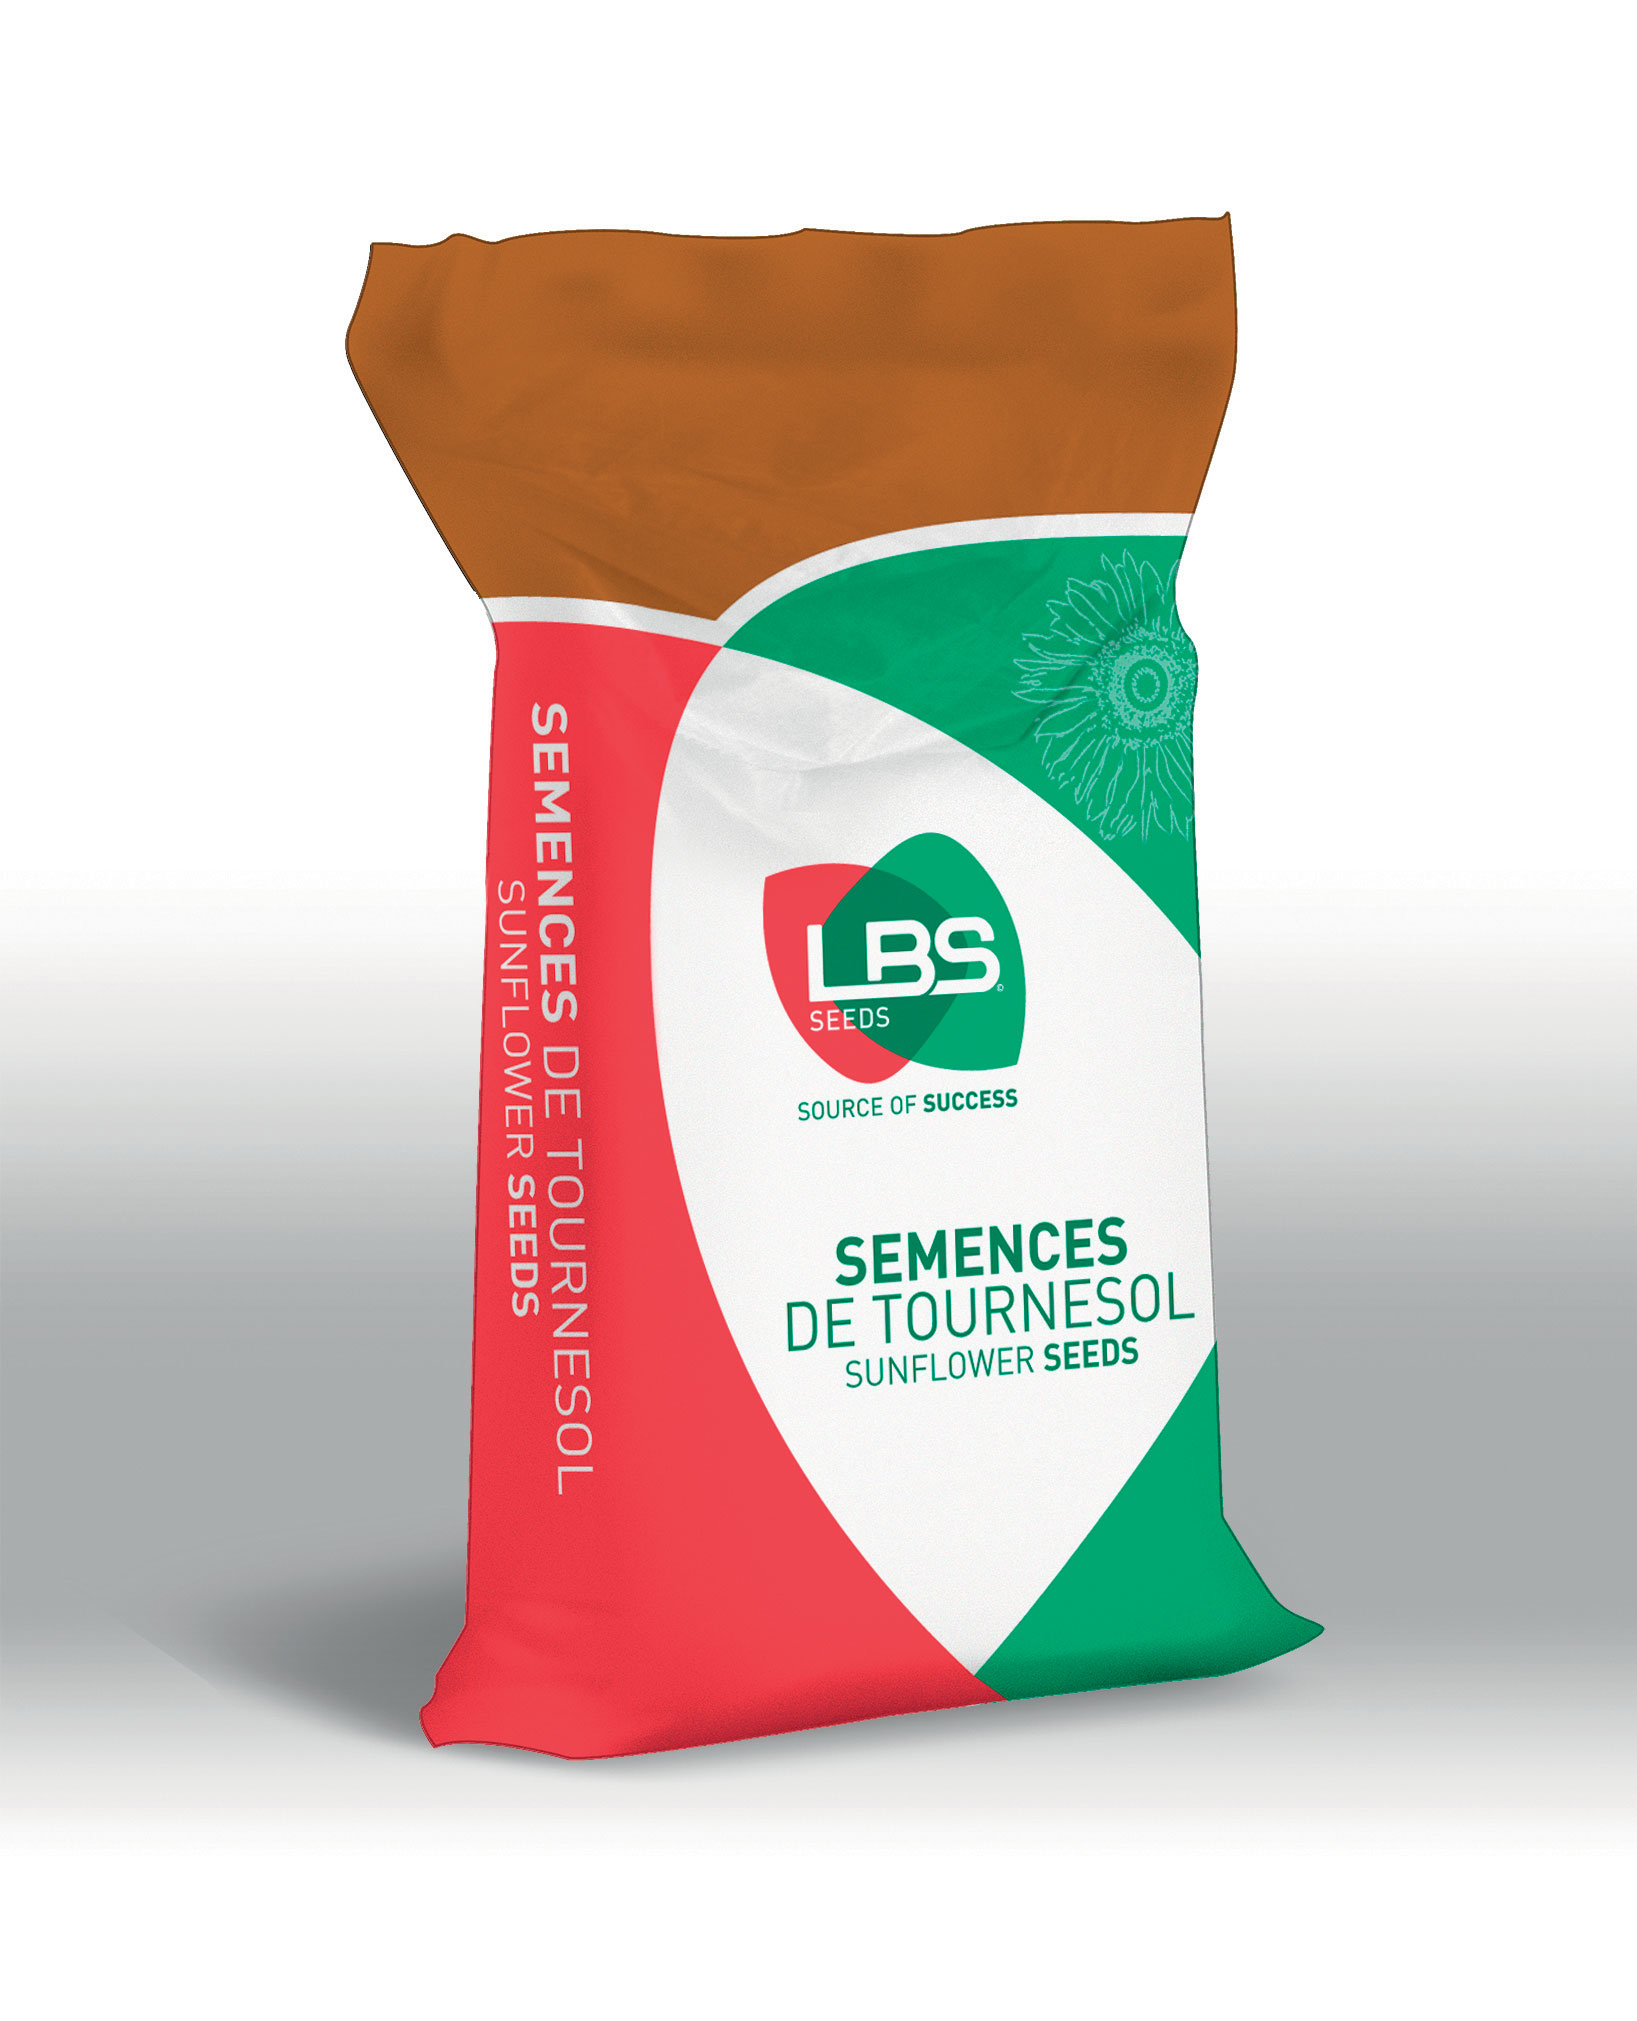 Sac de semences de tournesol LBS Seeds